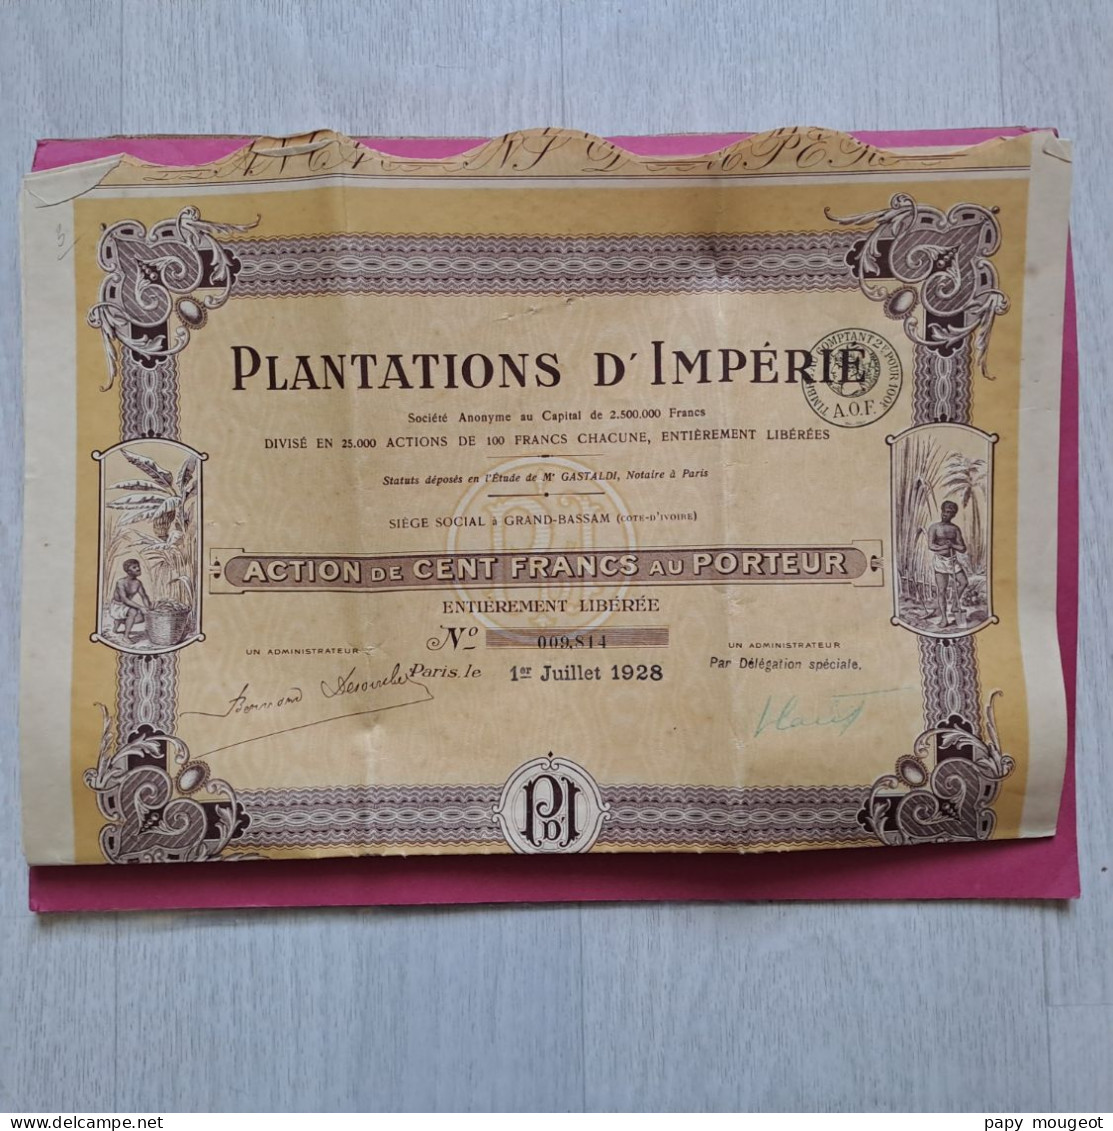 Plantations D'Impérié - Action De 100 Francs Au Porteur - Paris 1er Juillet 1928 N°009.814 - P - R